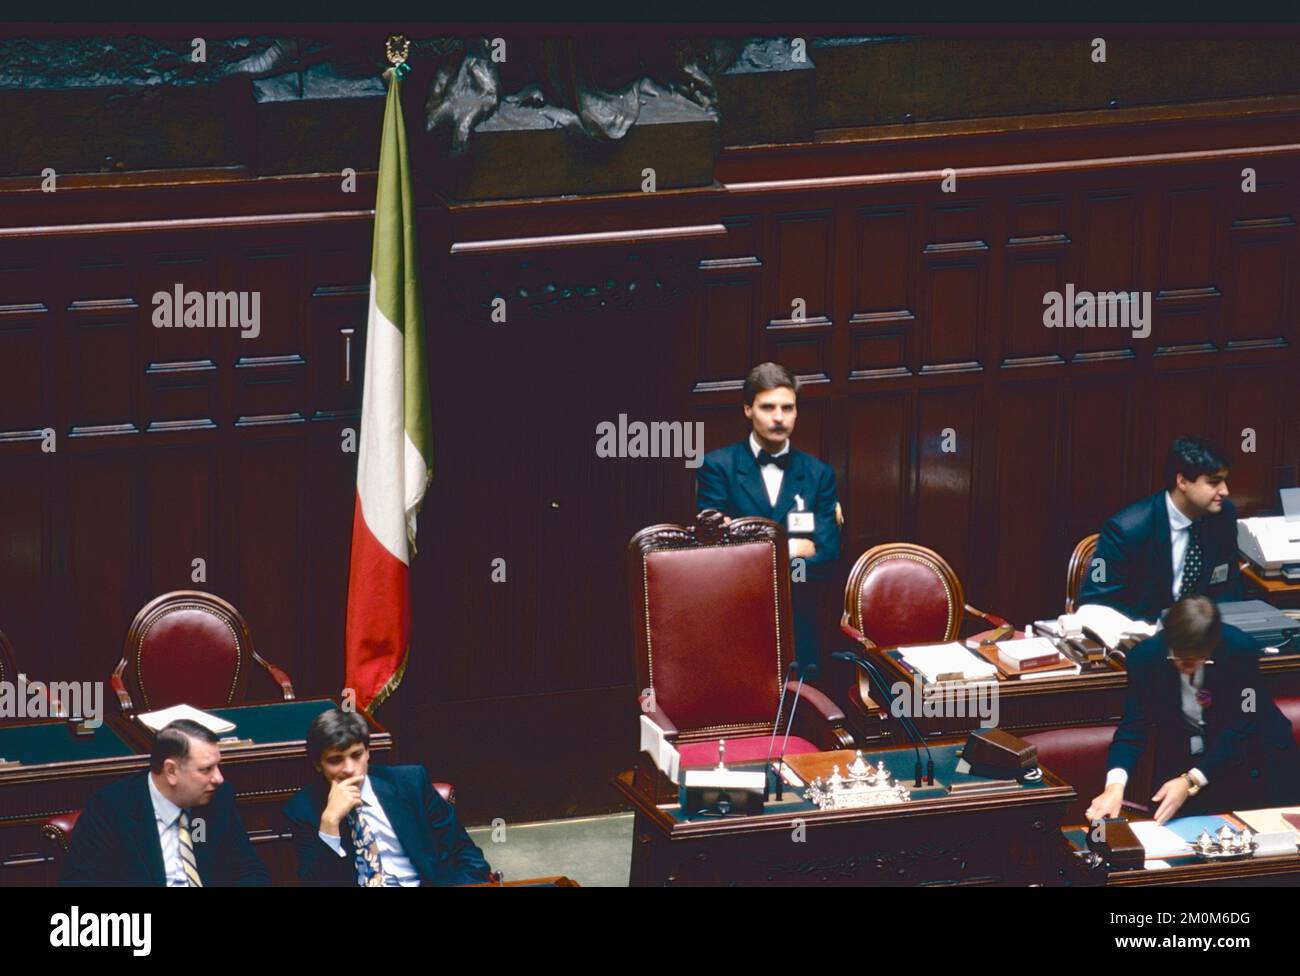 Le siège vide du Président lors du vote de défiance à la Chambre des représentants italienne, Rome, Italie octobre 1995 Banque D'Images